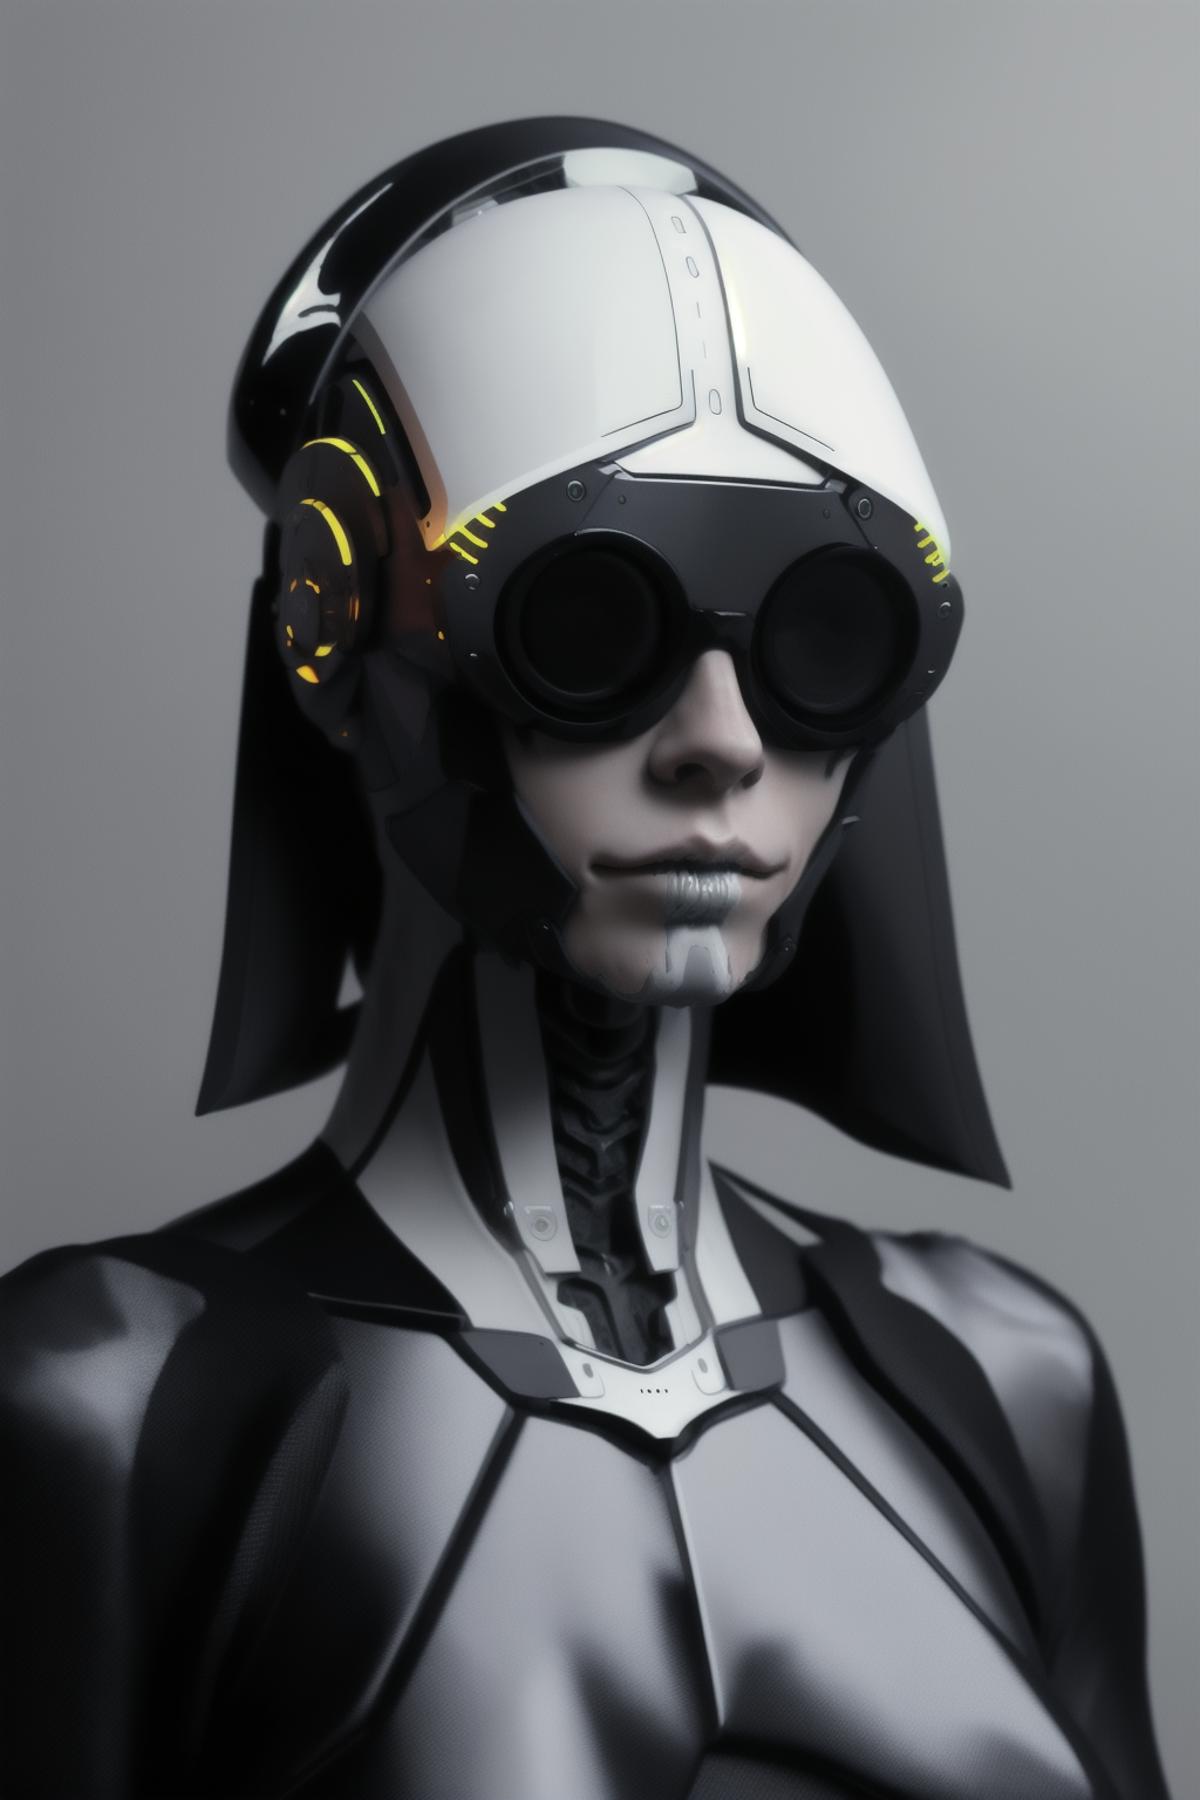 AI model image by Ciro_Negrogni